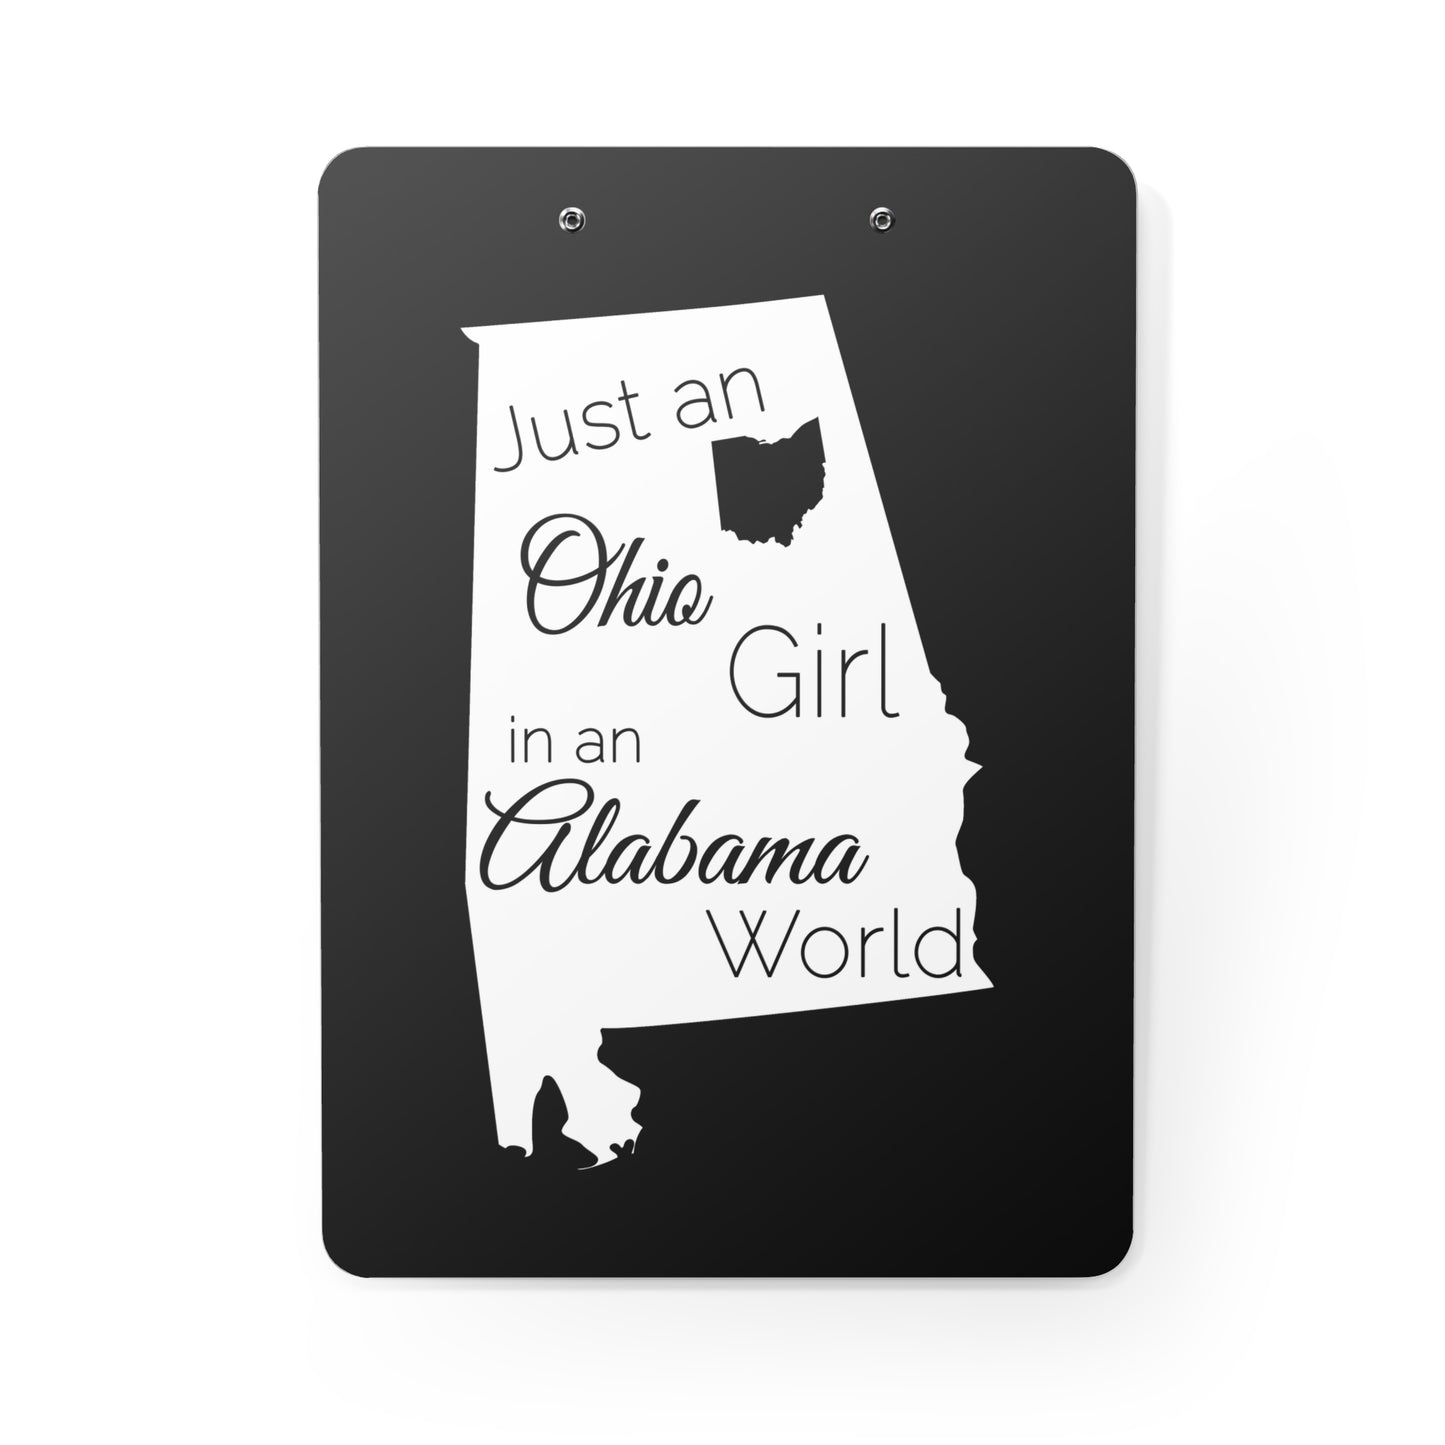 Just an Ohio Girl in an Alabama World Clipboard